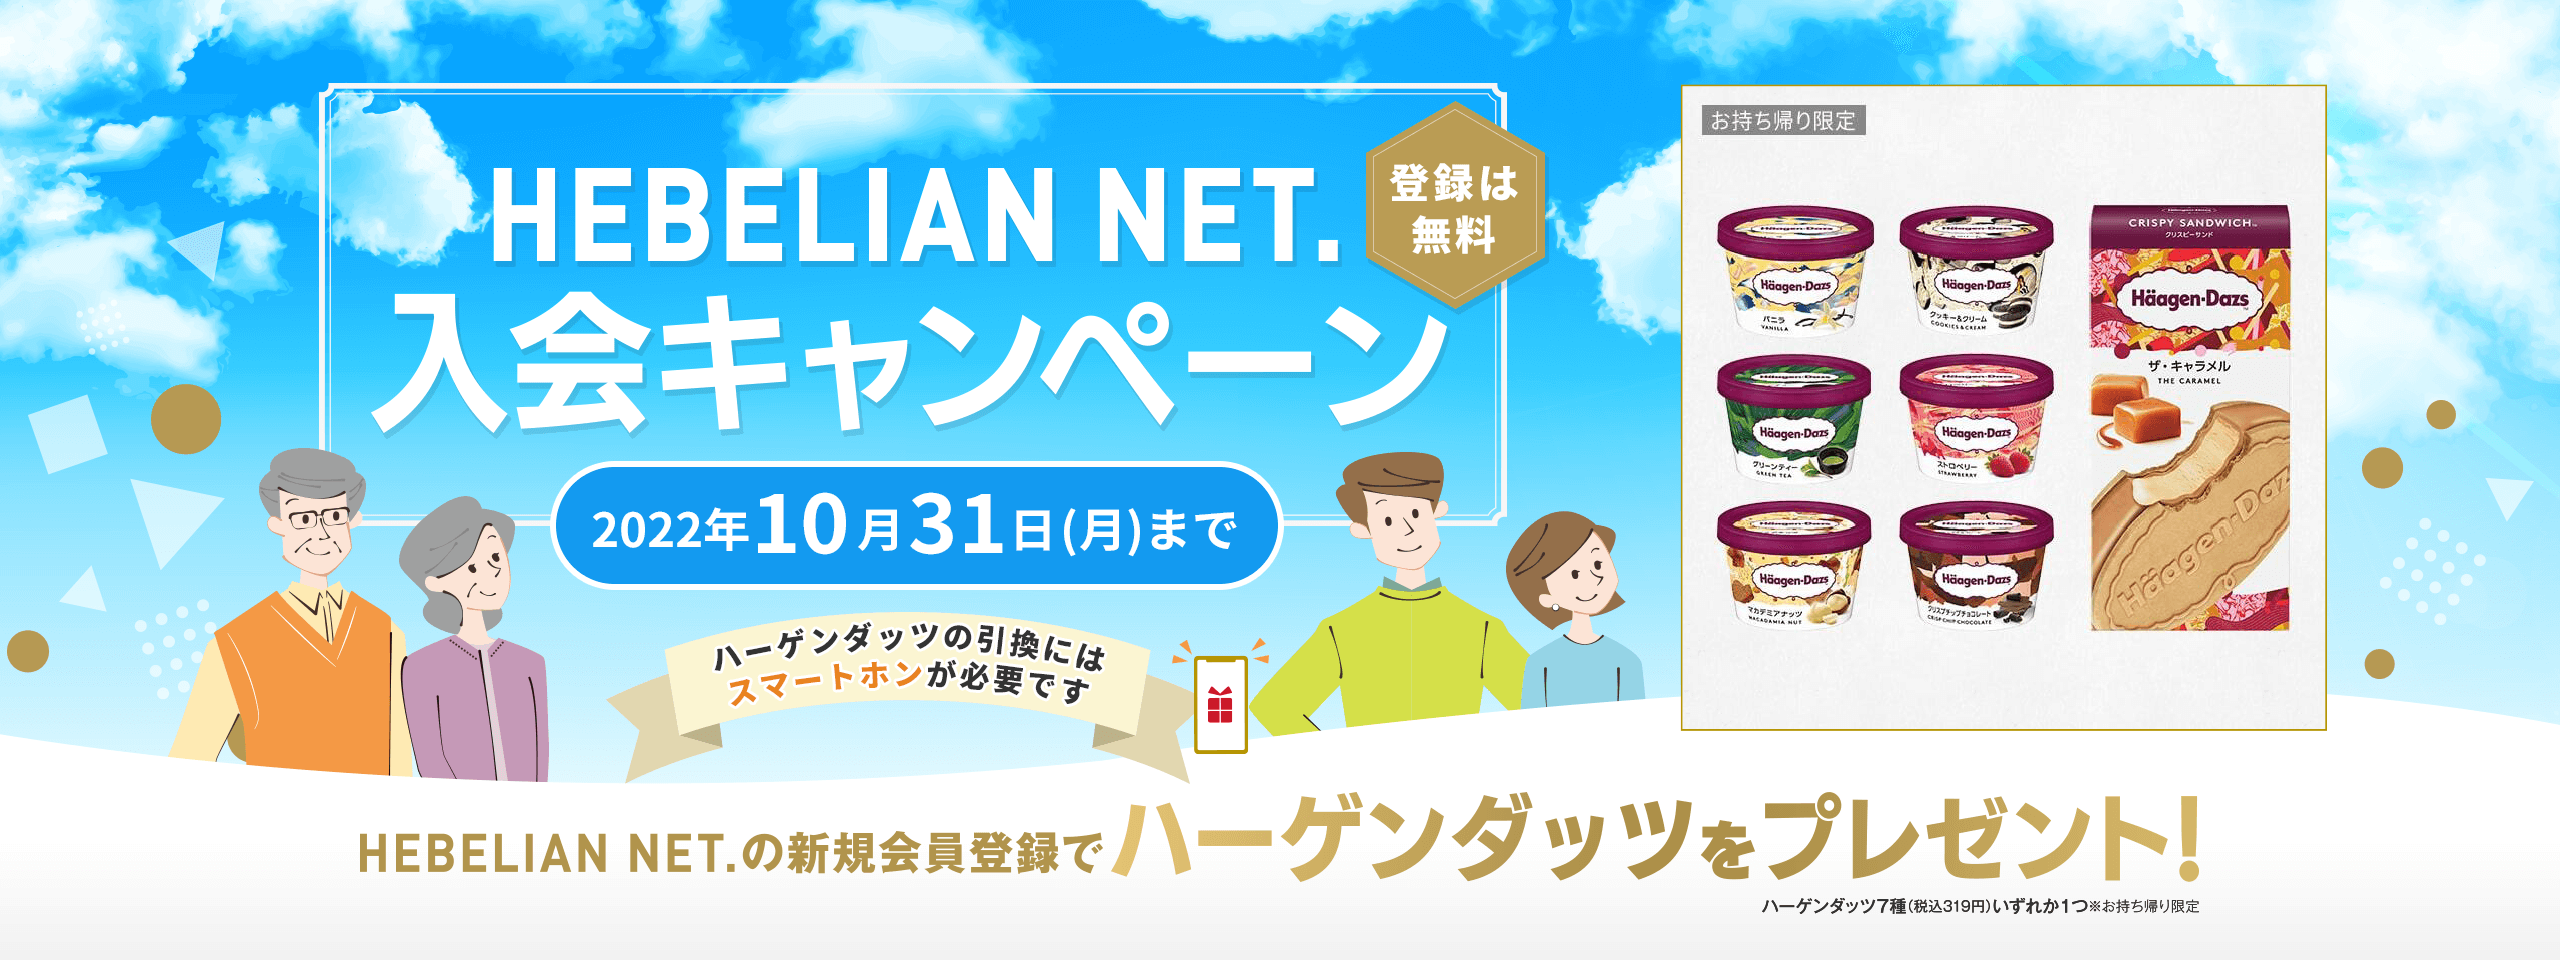 HEBELIAN NET. 入会キャンペーン